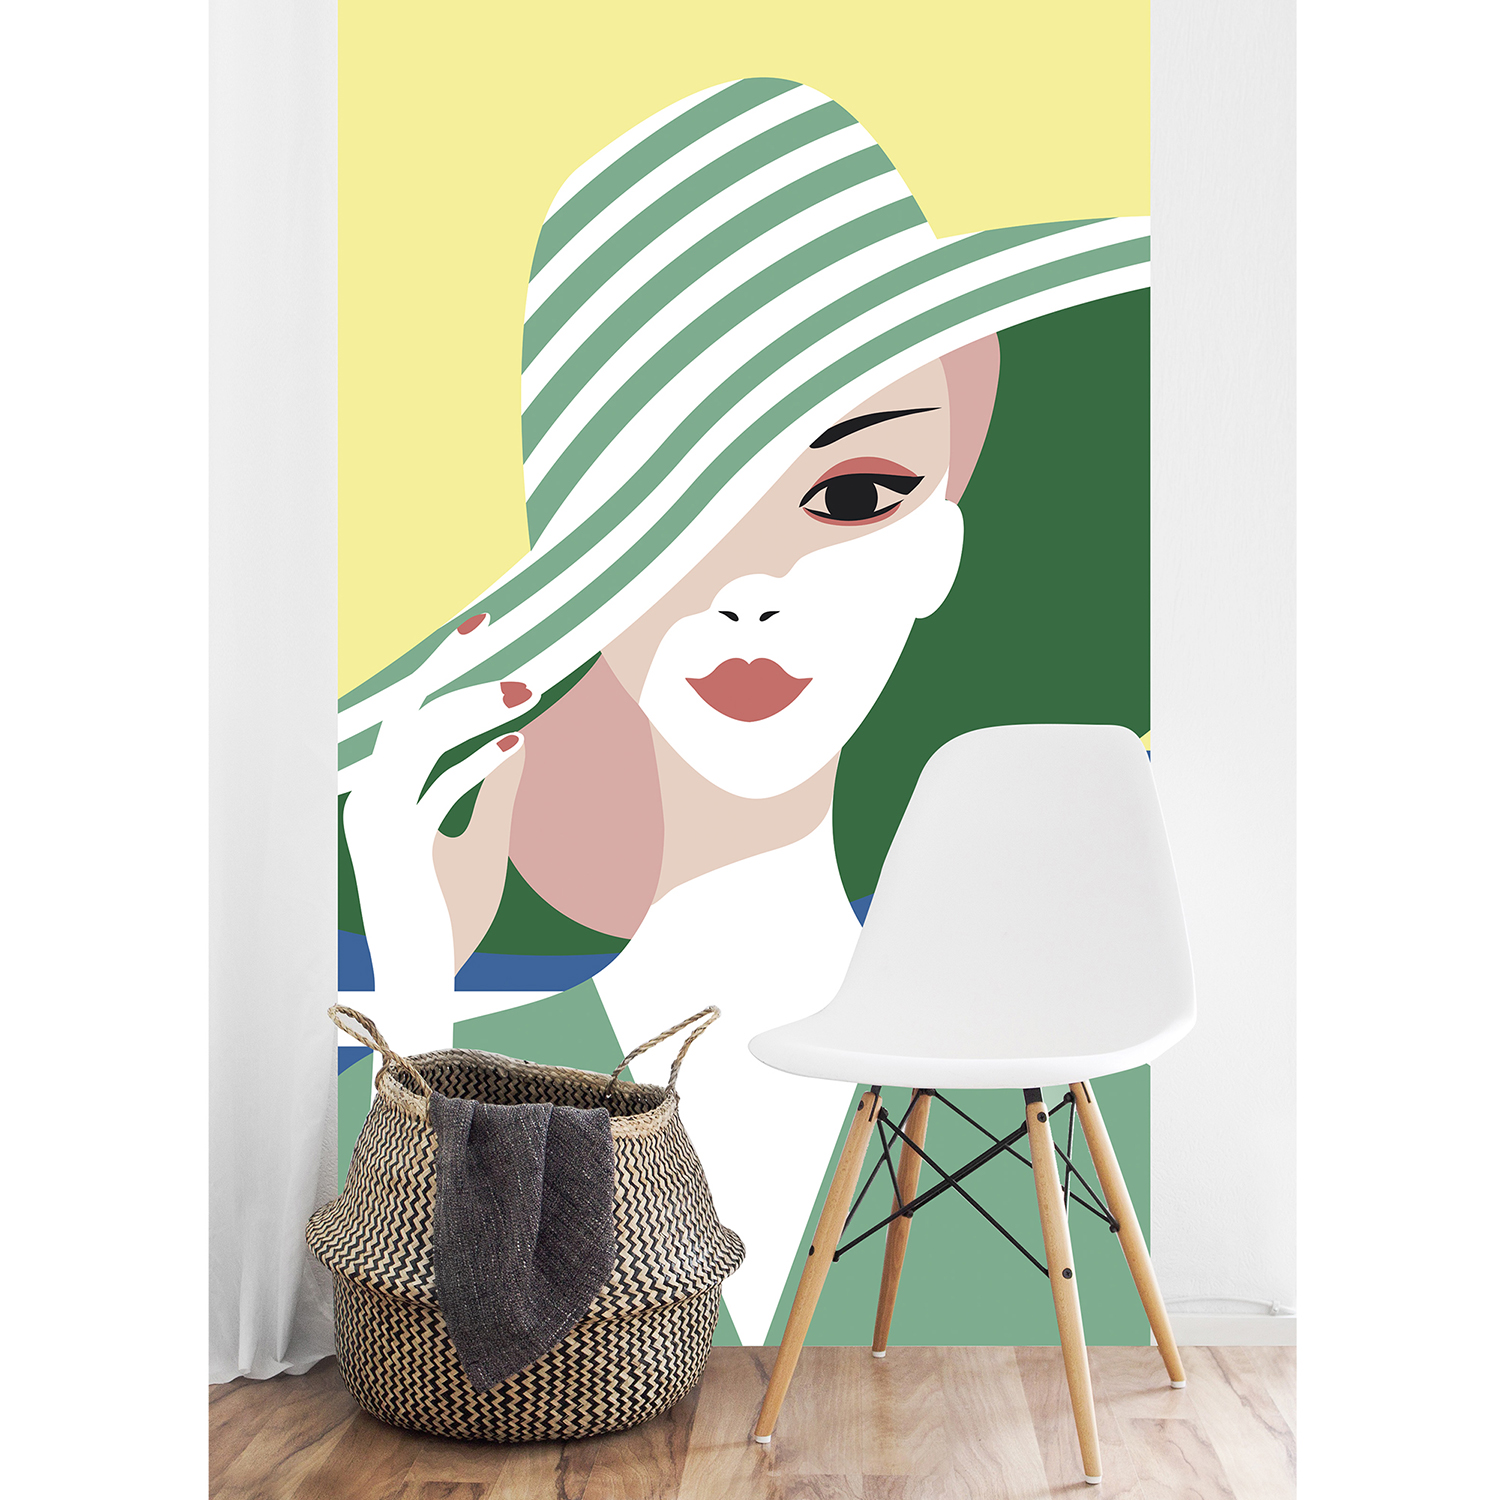 Sticker décoratif, rénovation facile, customisation de votre mur, nouveau look tendance, allure rétro chic, mystérieuse femme au chapeau vert en bord de mer, facile à entretenir, parfait pour une chambre ou un salon.